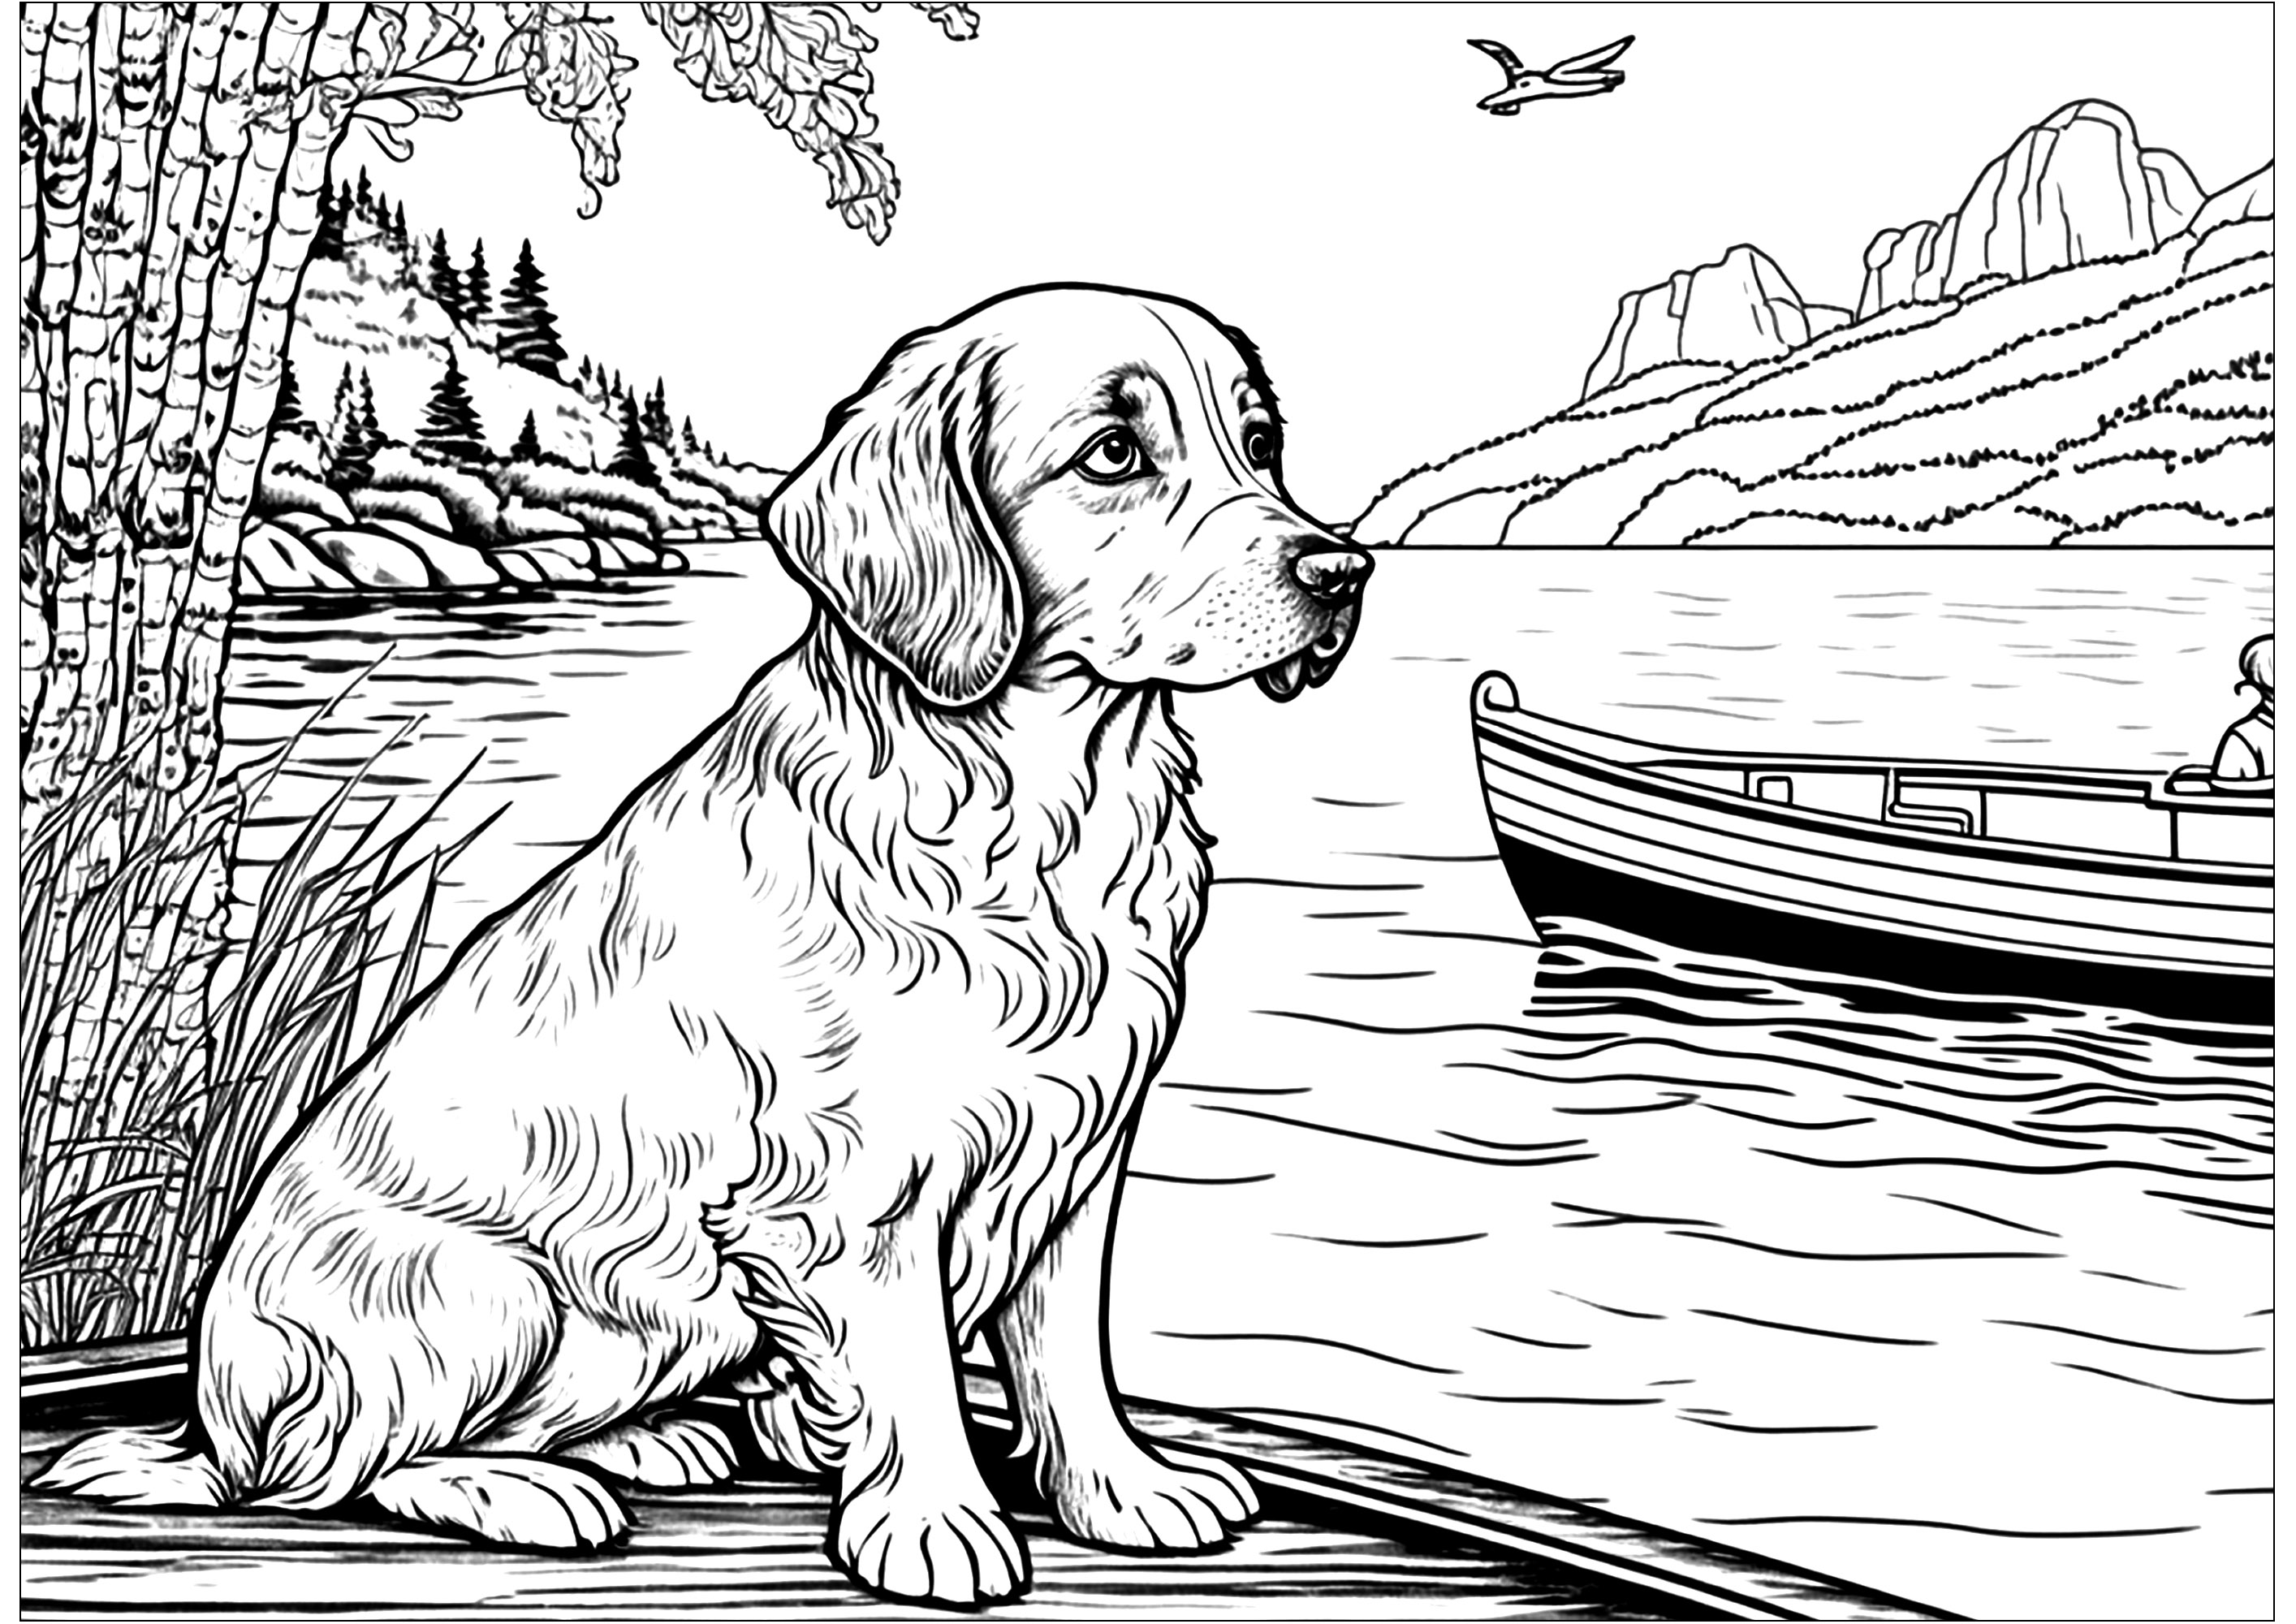 Perro en la orilla, mirando un barco. Un perro muy tranquilo en la orilla de un lago, viendo pasar un barco.Bonito paisaje de fondo: montañas, bosques...